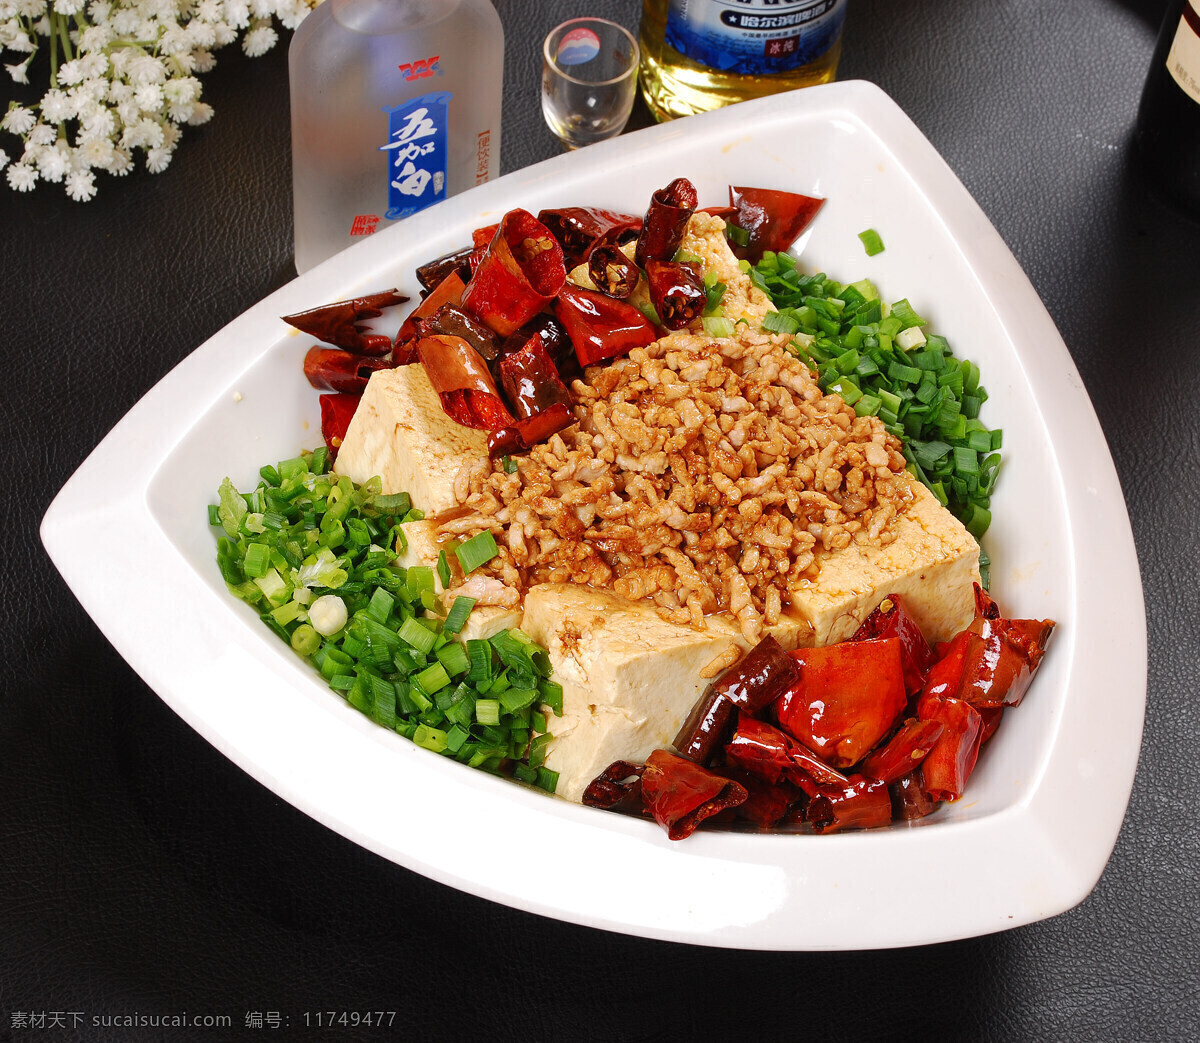 富贵豆腐 豆腐 凉菜 拌菜 佐菜 东北菜 传统美食 餐饮美食